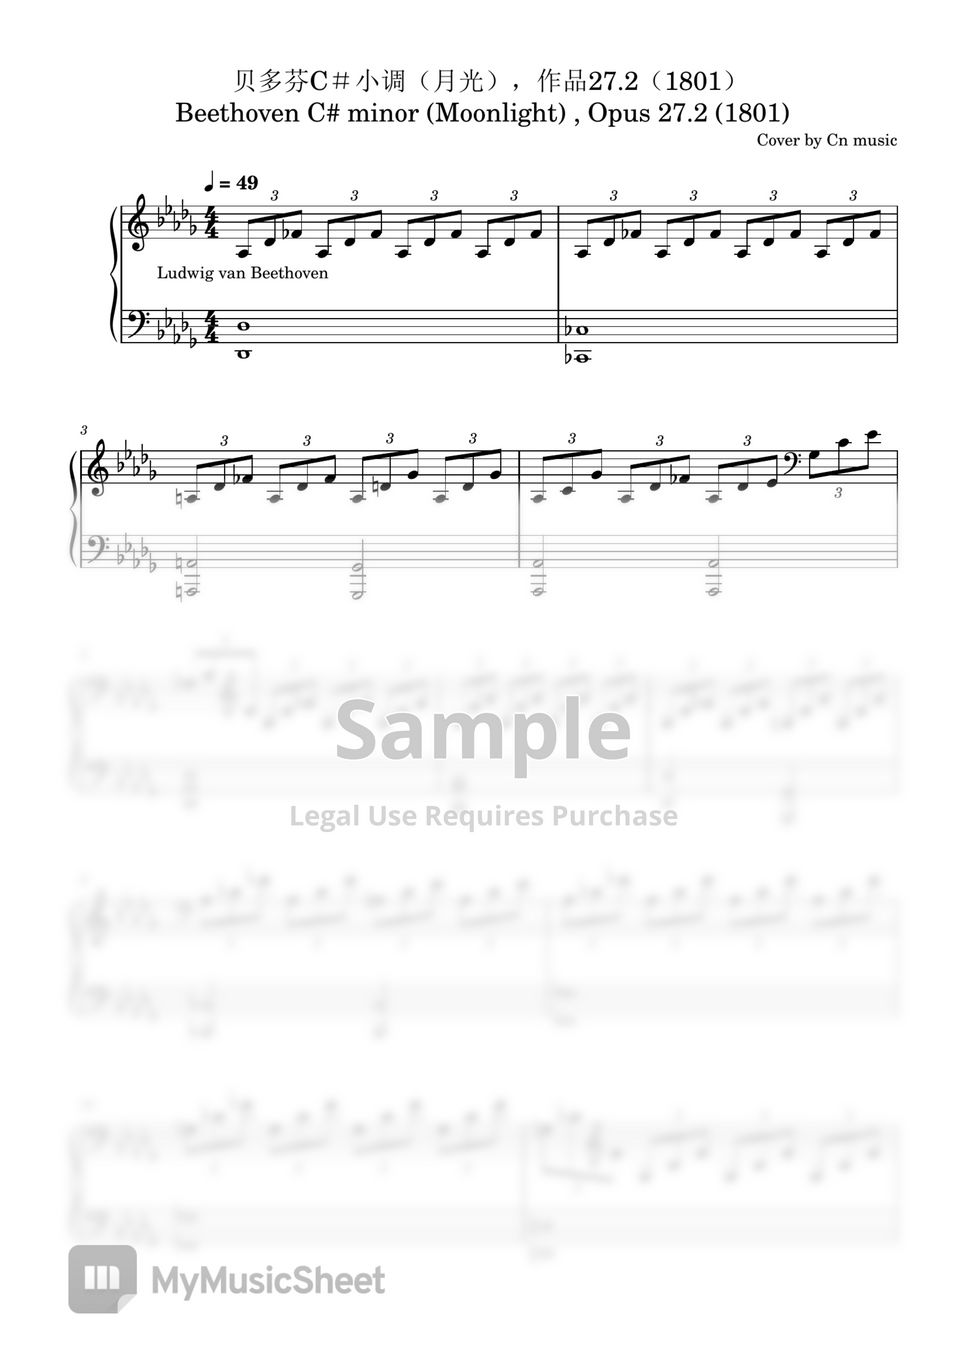 Beethoven C# minor (Moonlight) , Opus 27/2 (1801) - Beethoven C# minor (Moonlight) , Opus 27/2 (1801) by CN music